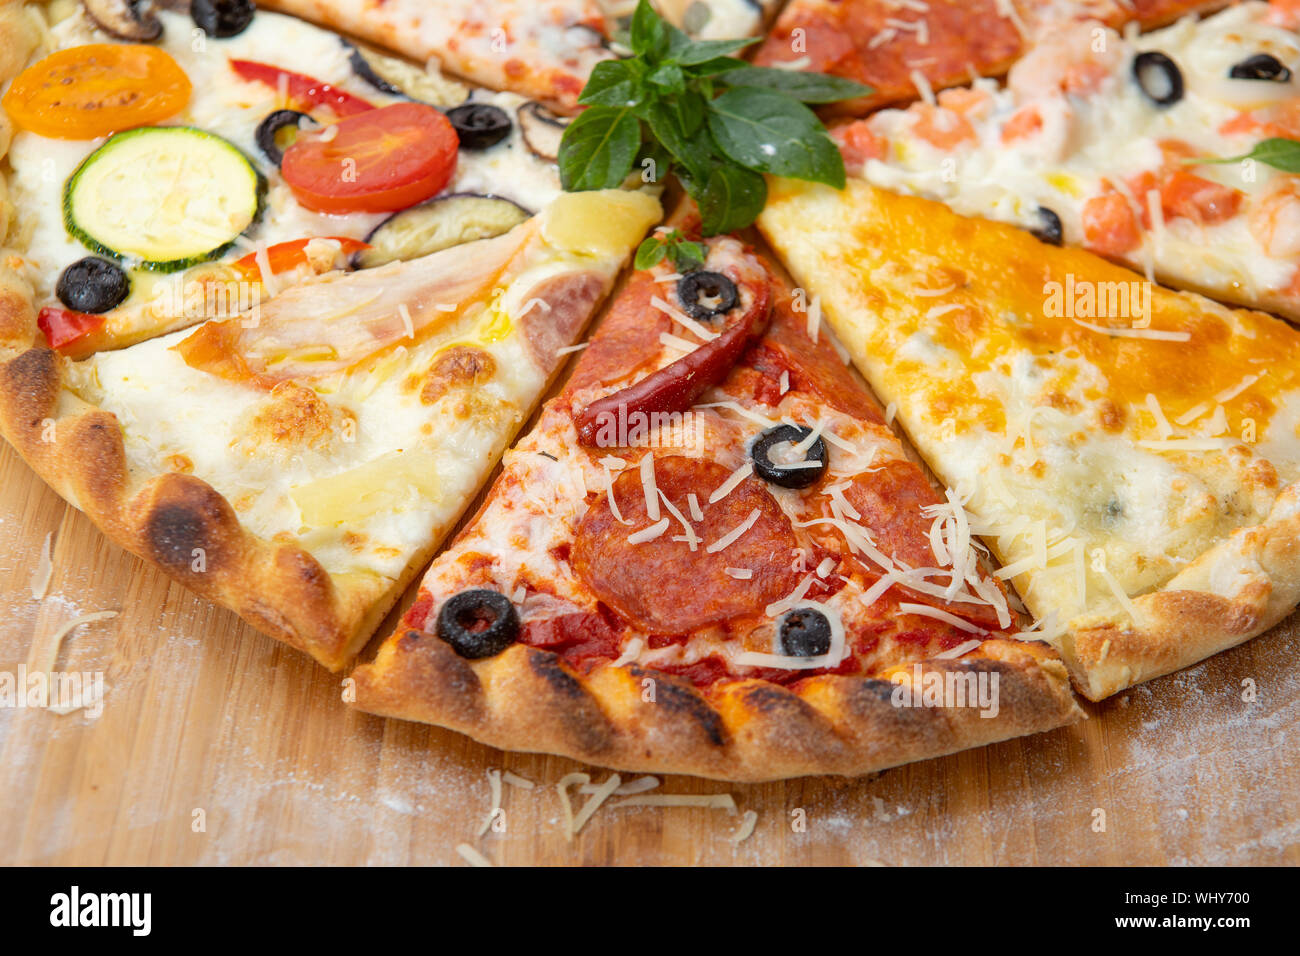 Assortiment de tranches de pizza close-up avec des ingrédients différents décoré avec du basilic, un assortiment de fast food italien traditionnel Banque D'Images